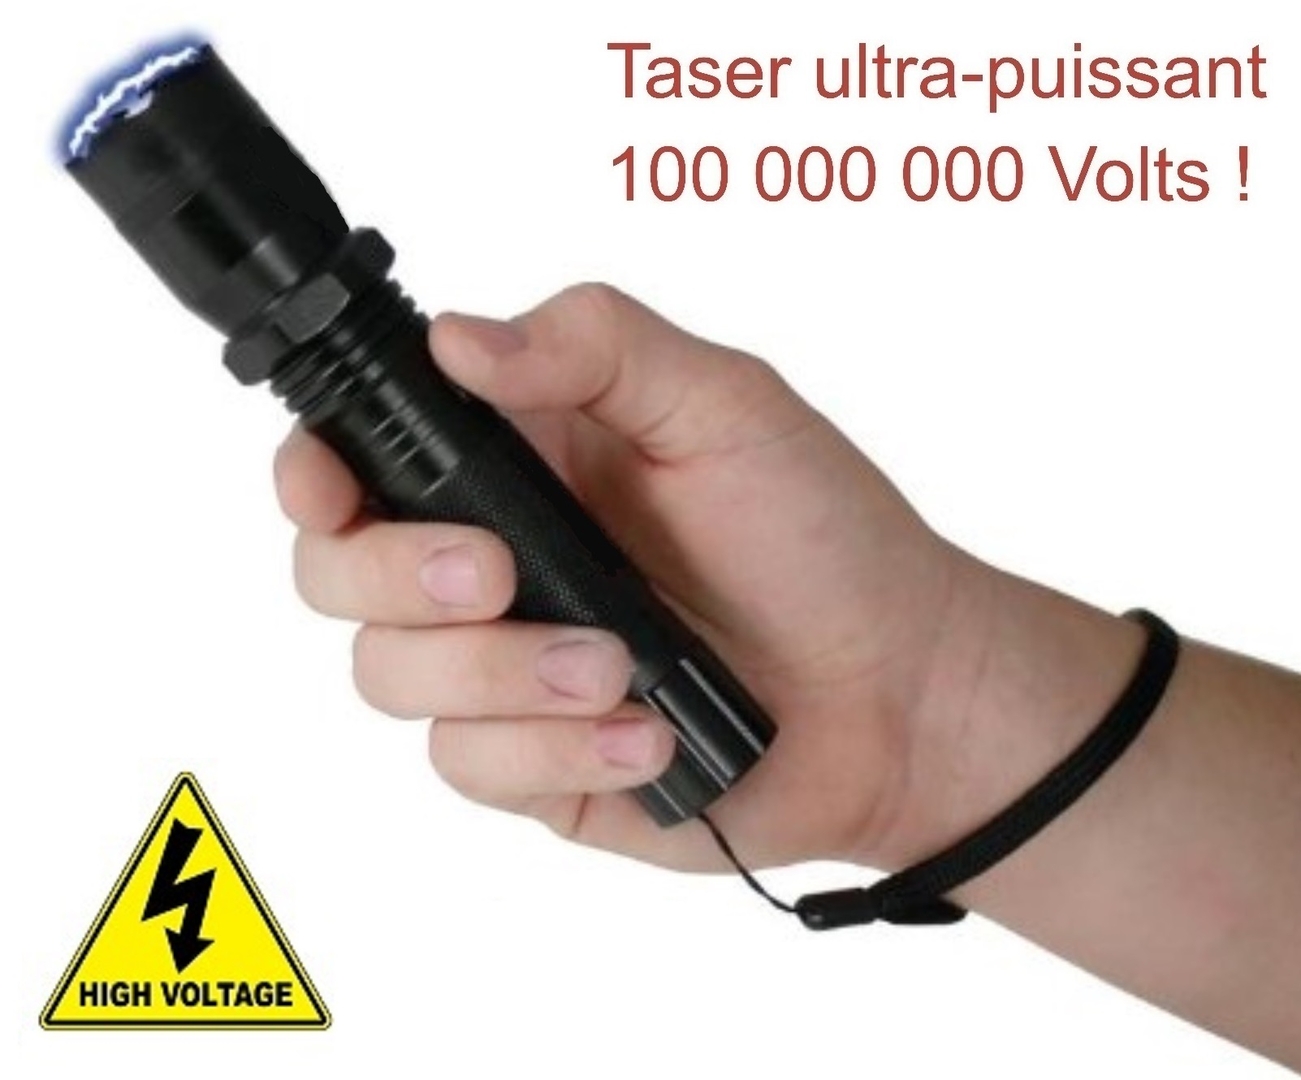 Shocker électrique Rouge à lèvre 2 millions de volts avec lampe led  (1202-noir) - AUTO DÉFENSE/Taser Shocker - tazer